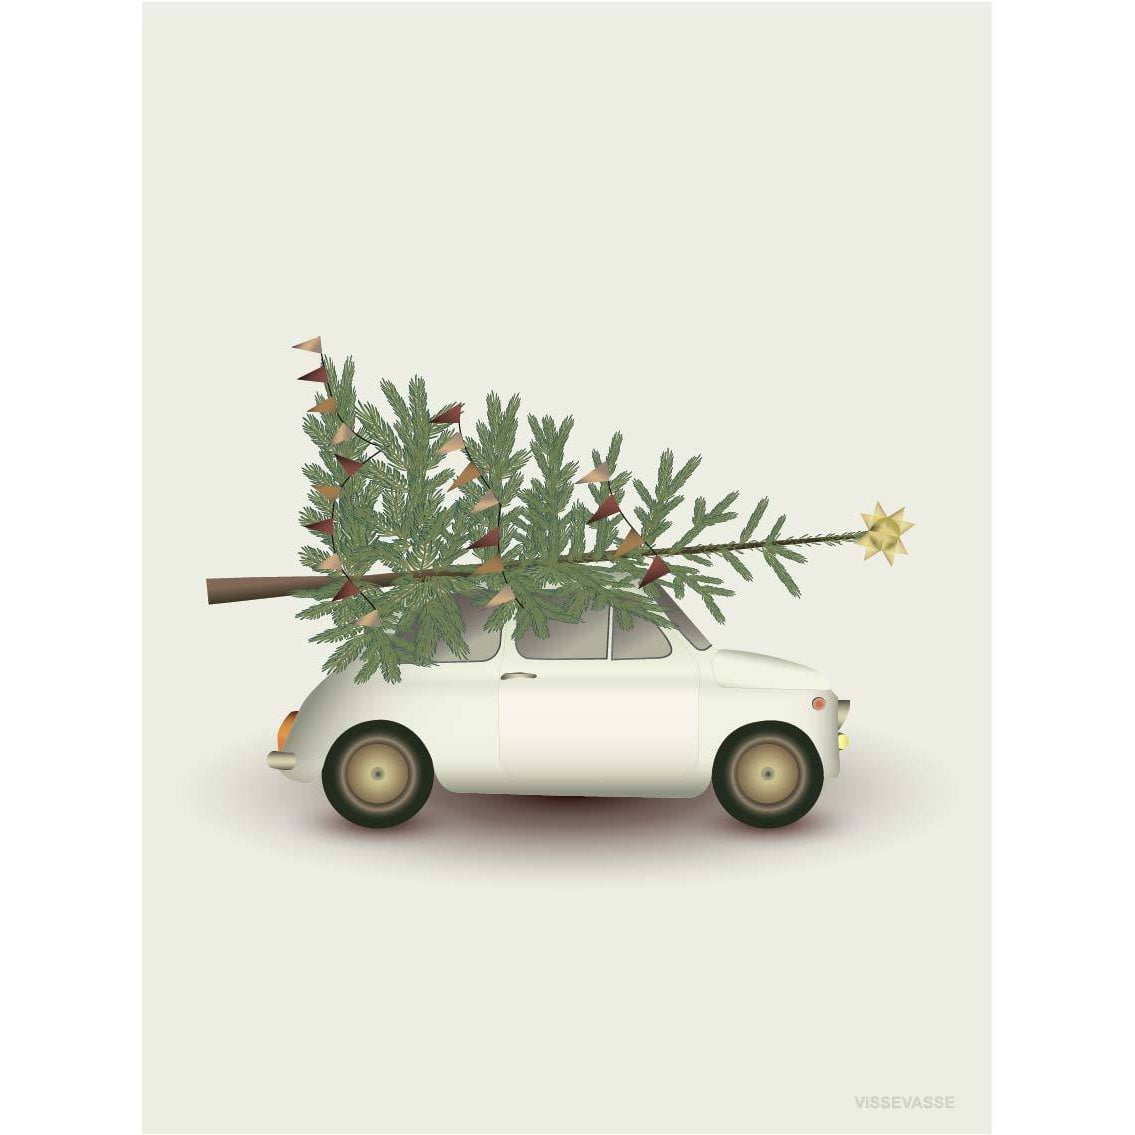 Vissevasse Weihnachtsbaum & kleines Auto Grußkarte, 10,5x15cm